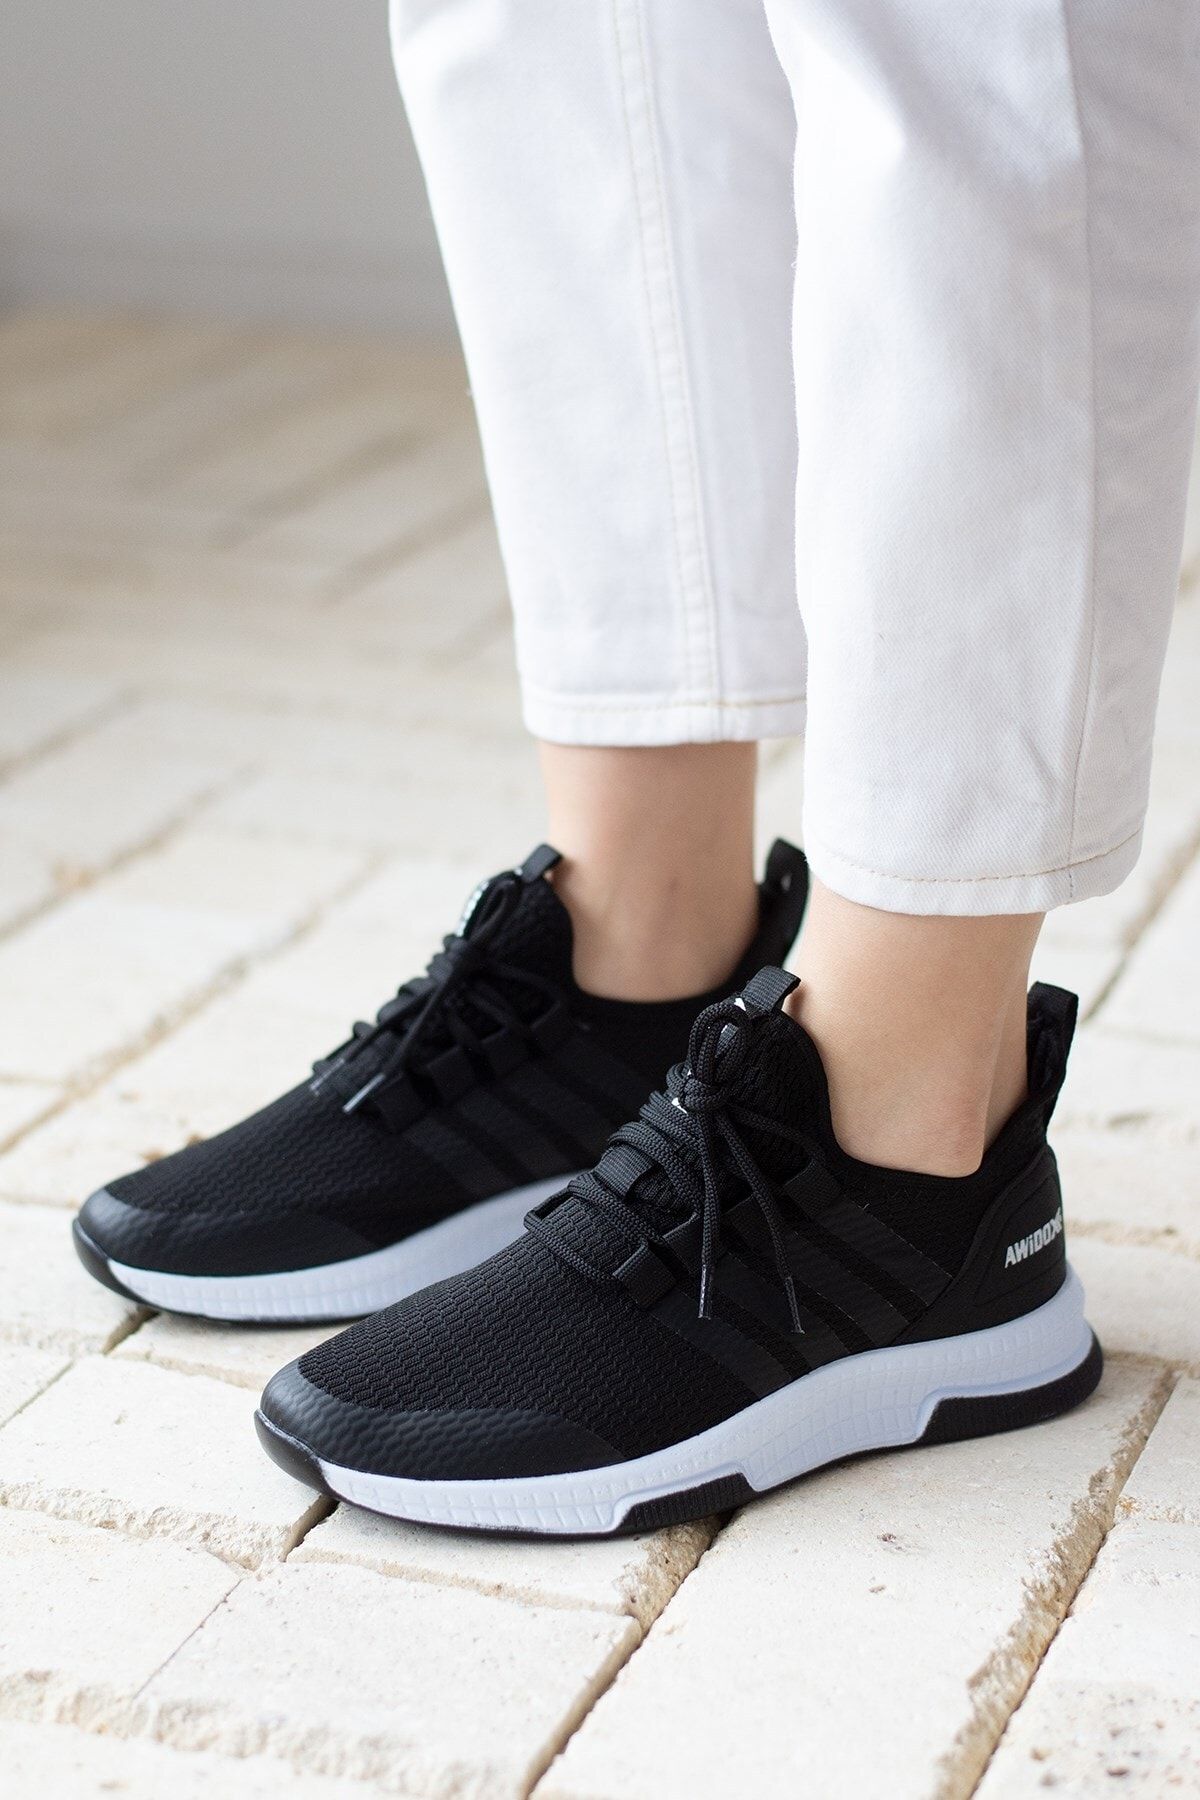 İmerShoes Günlük Unisex Siyah Şeritli Sneaker Nefes Alabilen Hafif Yürüyüş Esnek Spor Ayakkabı 249